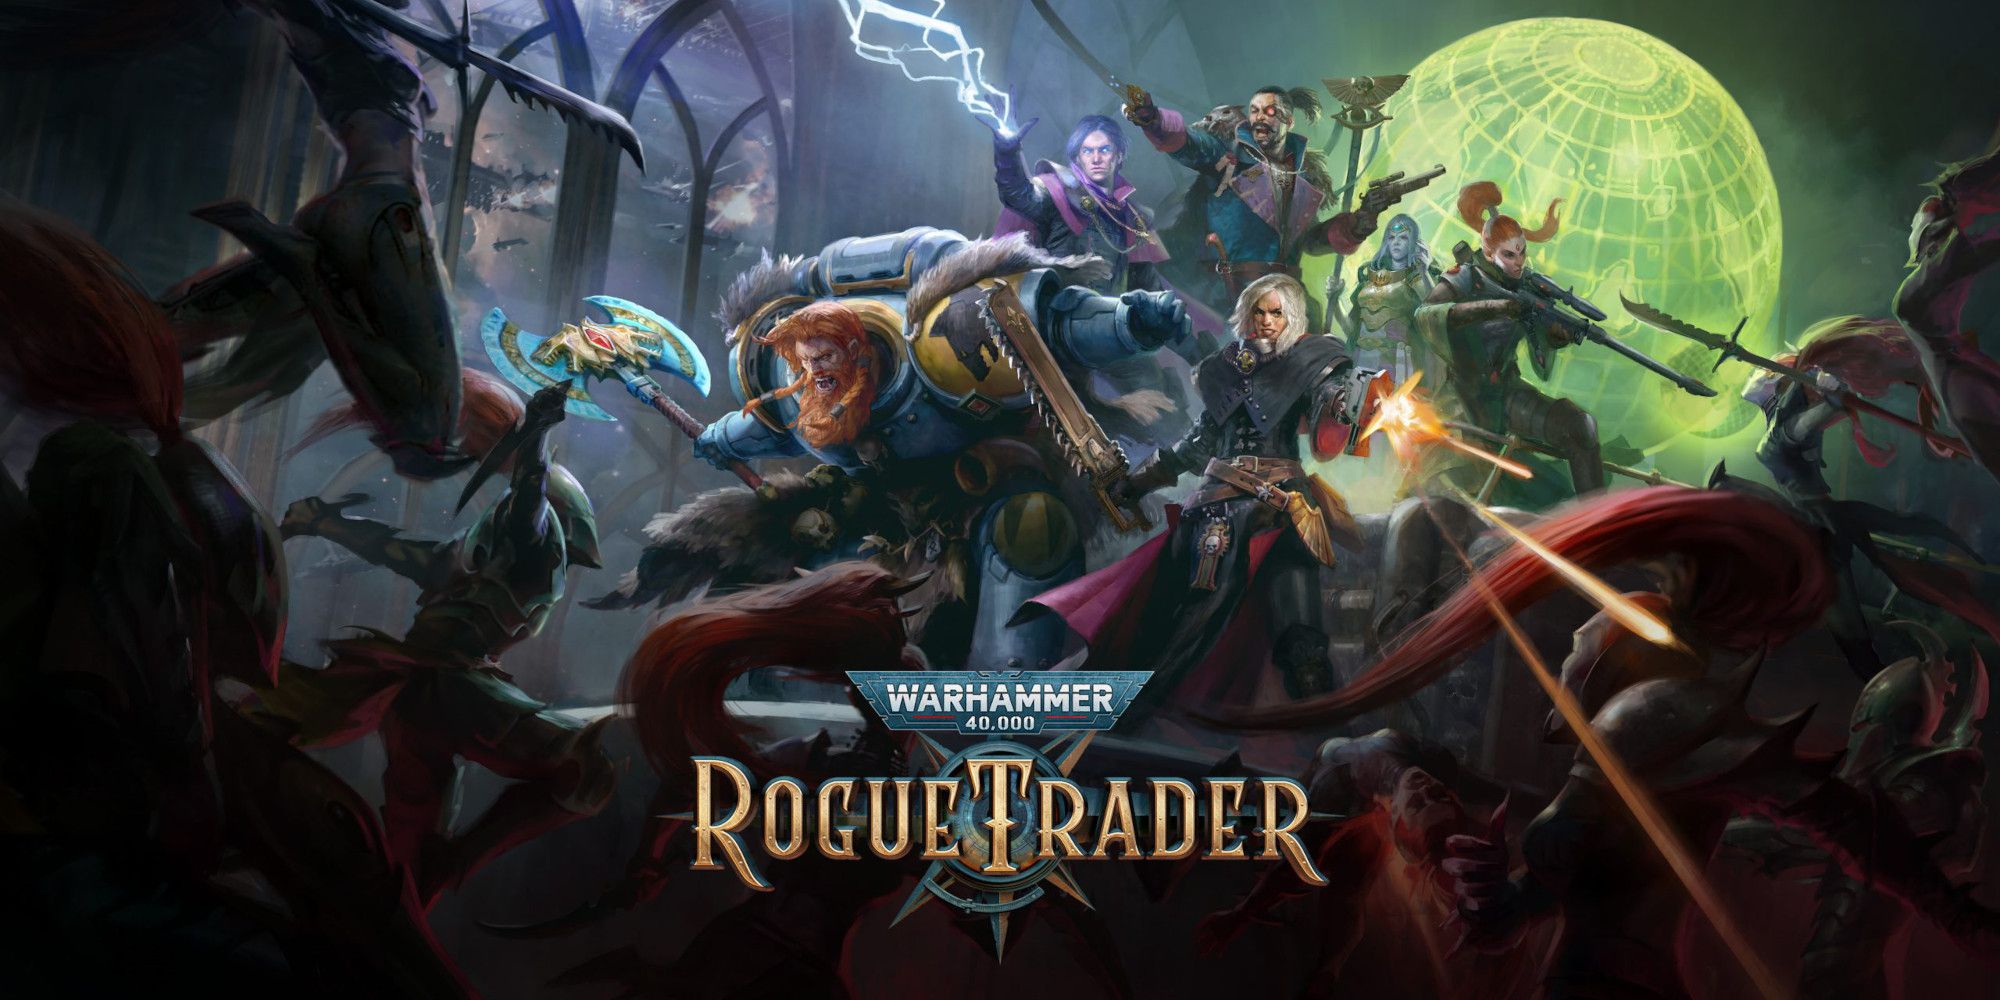 Warhammer 40,000: Rogue Trader Review: "Entiende de qué se trata Warhammer 40,000"